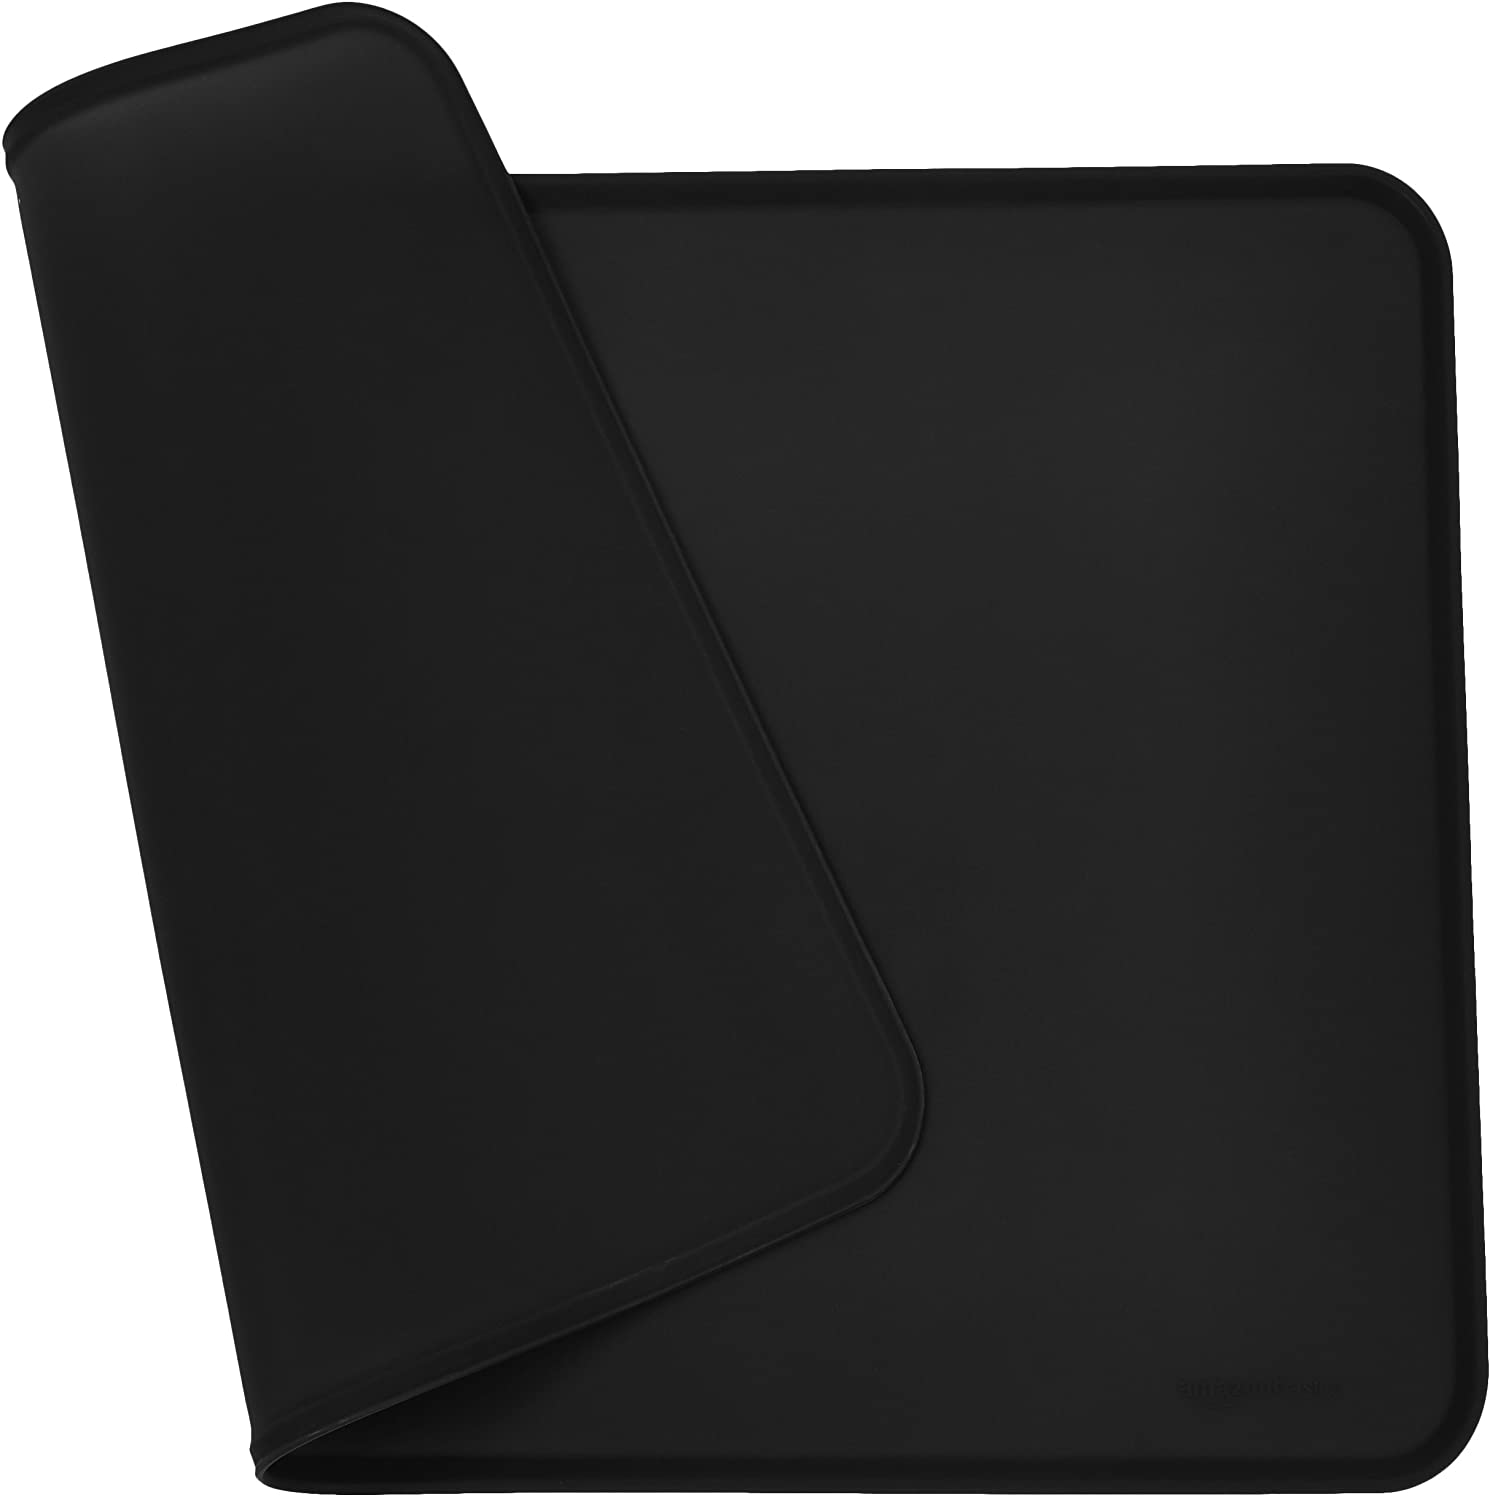  AmazonBasics - Alfombrilla para comedero de mascota, de silicona, impermeable, 61 x 41 cm, Negro 